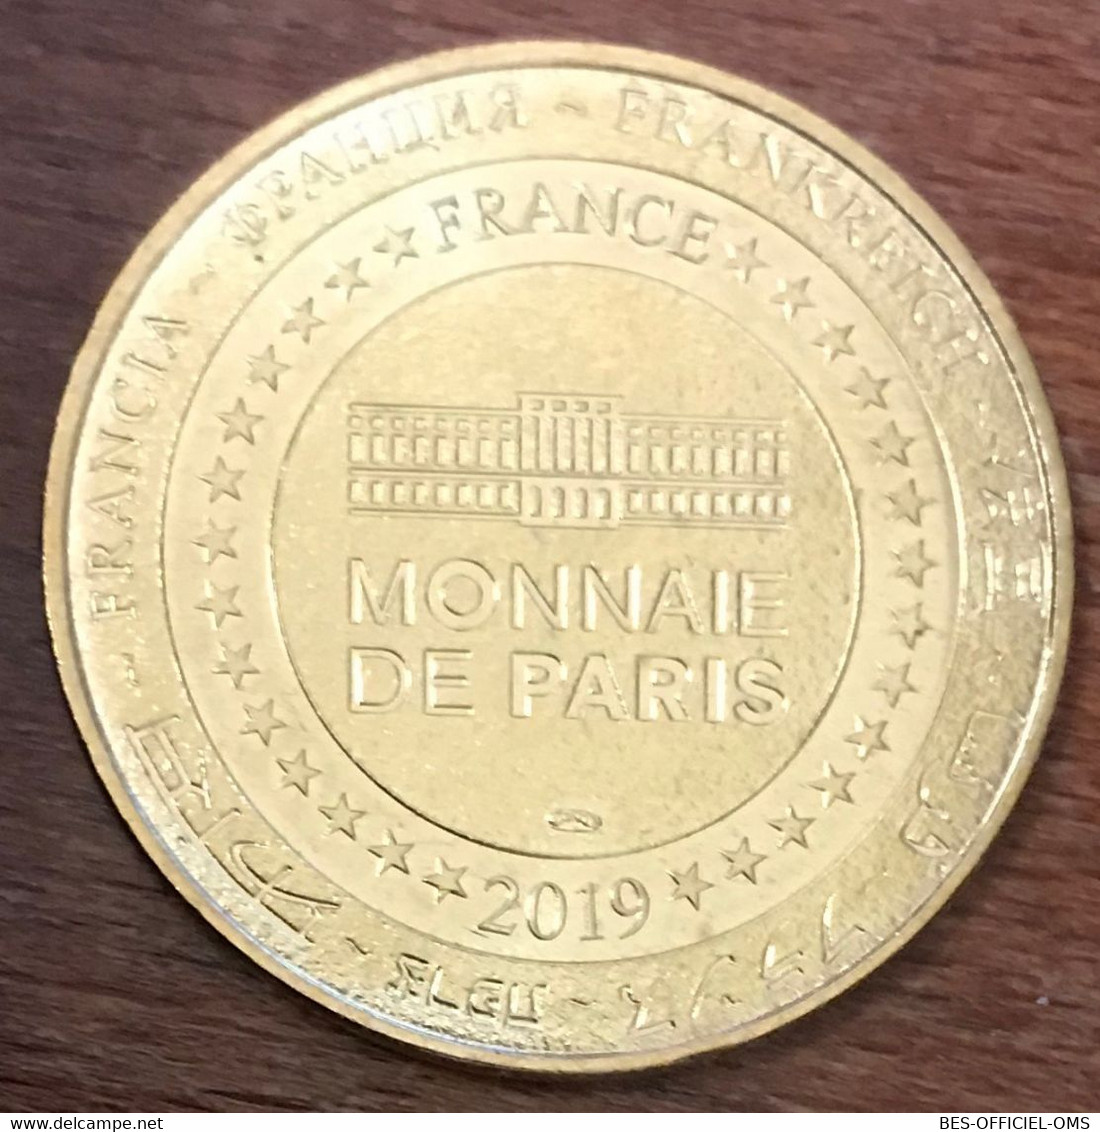 14 COLLEVILLE-SUR-MER OVERLORD MUSEUM CHAR 2018 MÉDAILLE MONNAIE DE PARIS JETON TOURISTIQUE MEDALS COINS TOKENS - 2018